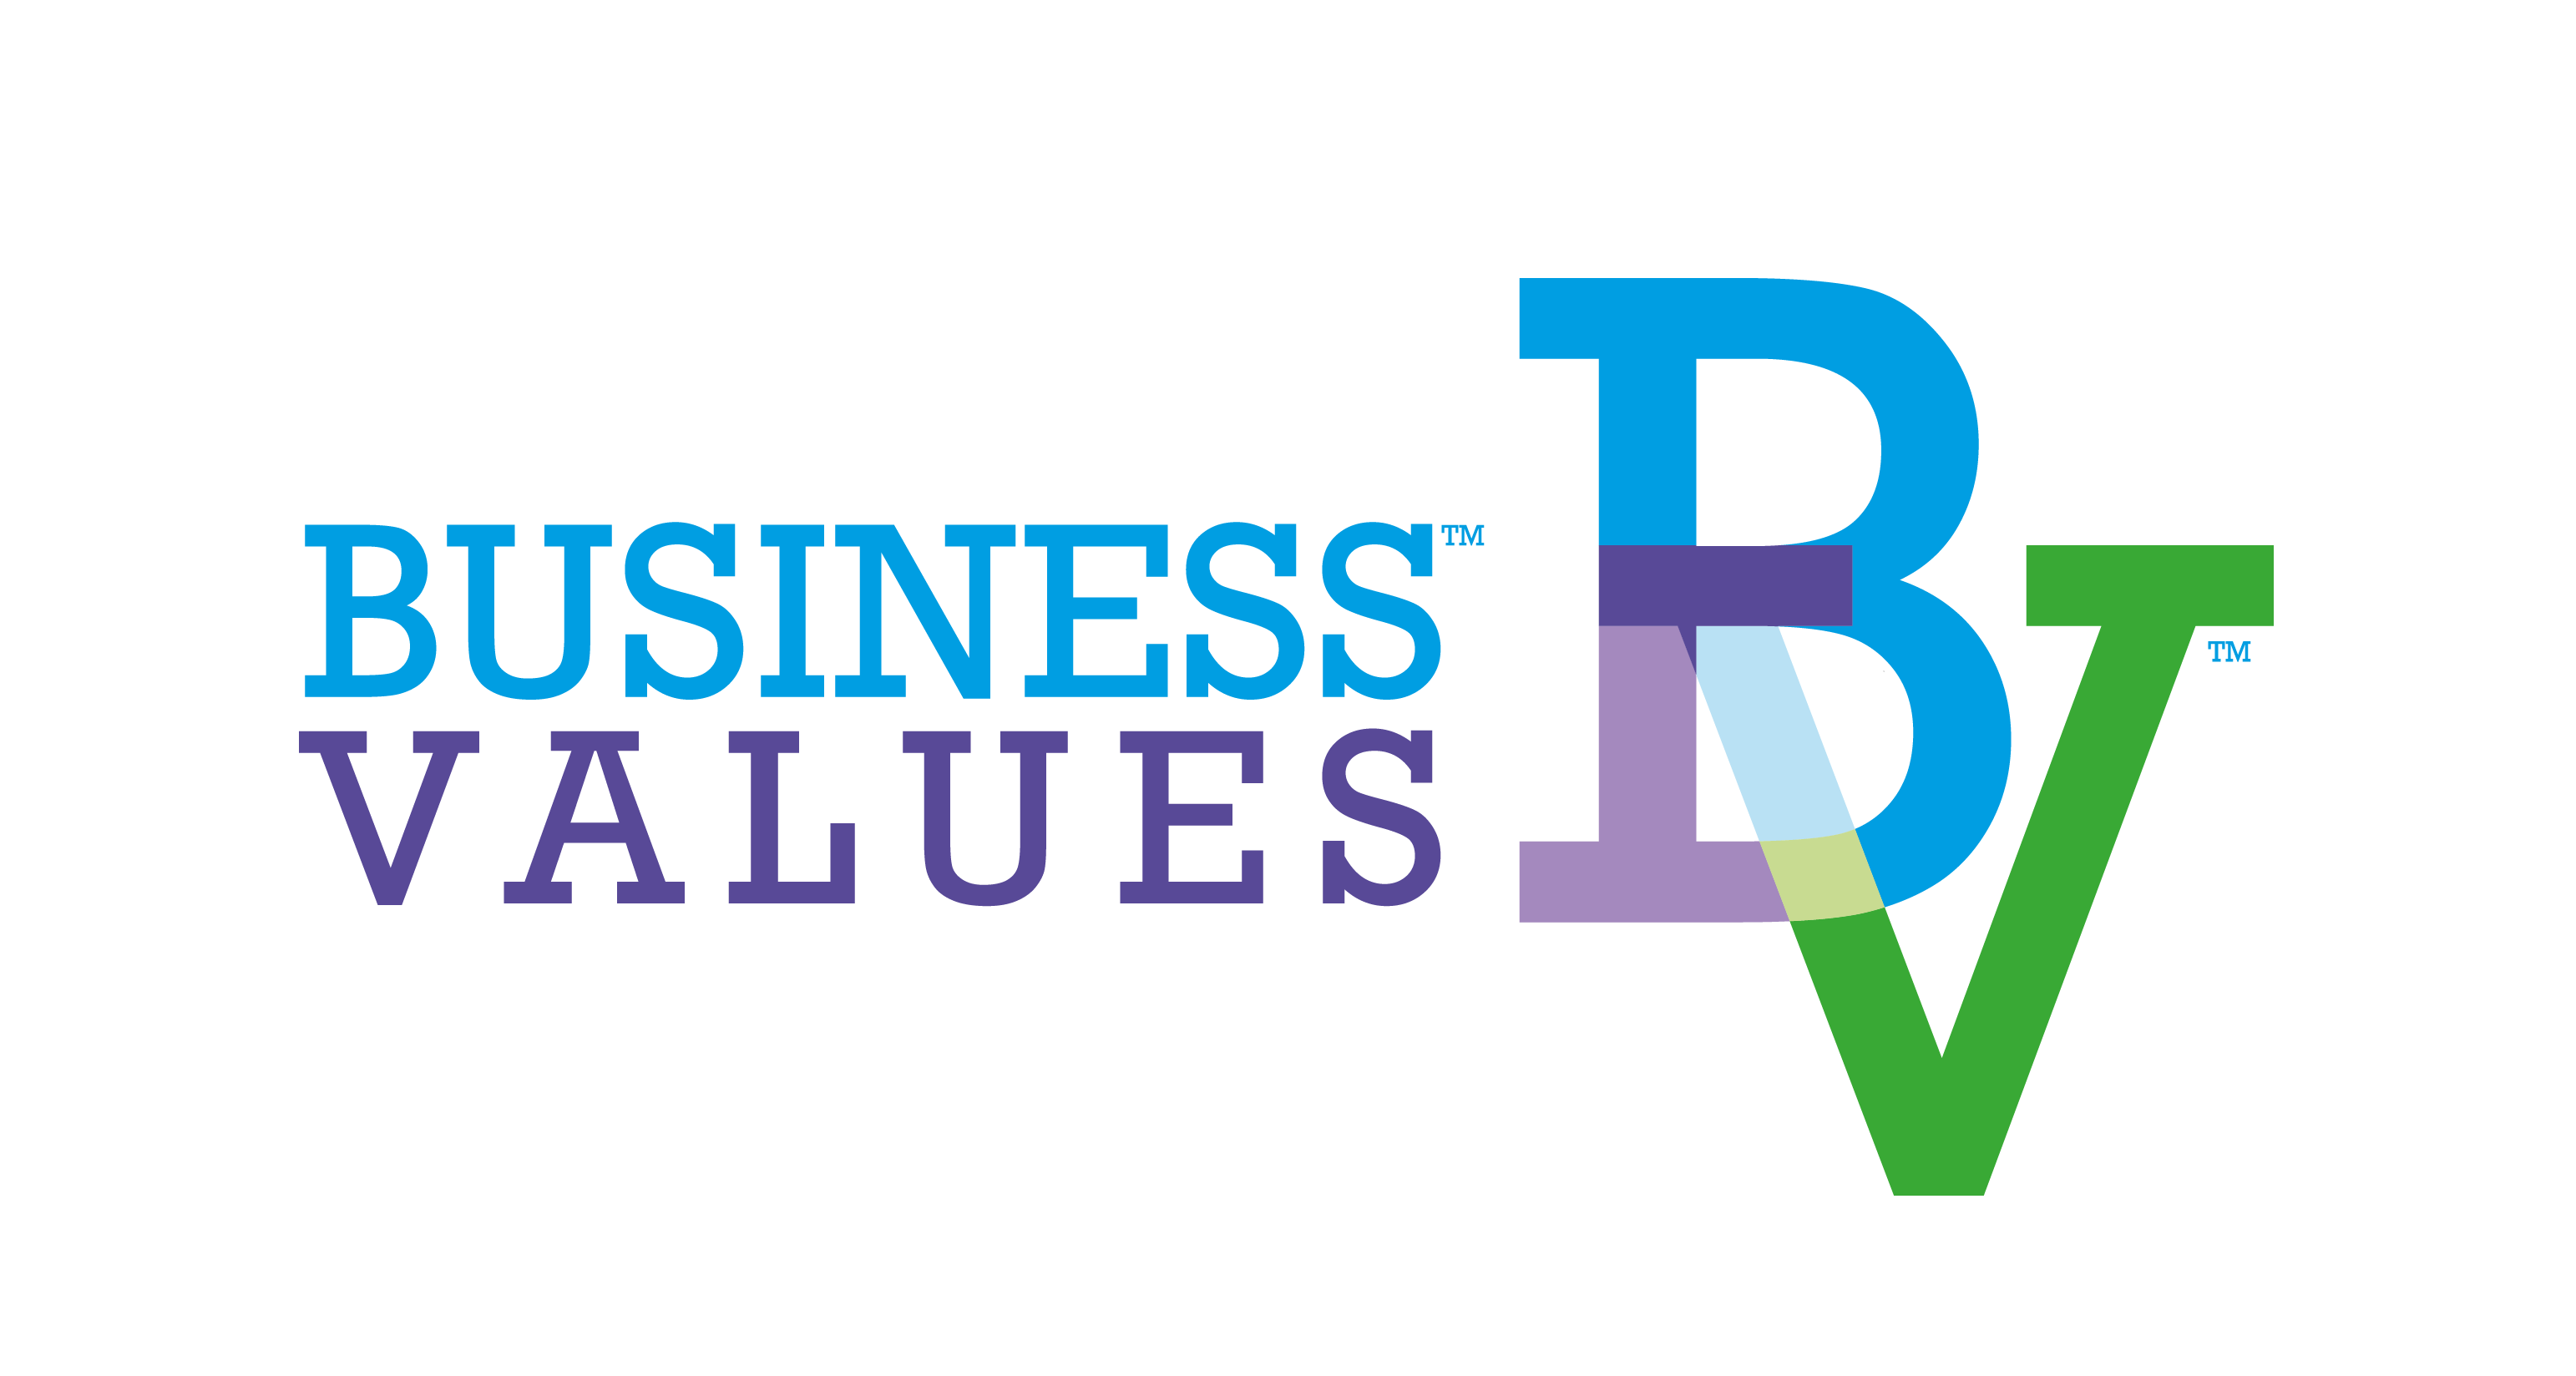 Business Values Agency وكالة قيم الأعمال